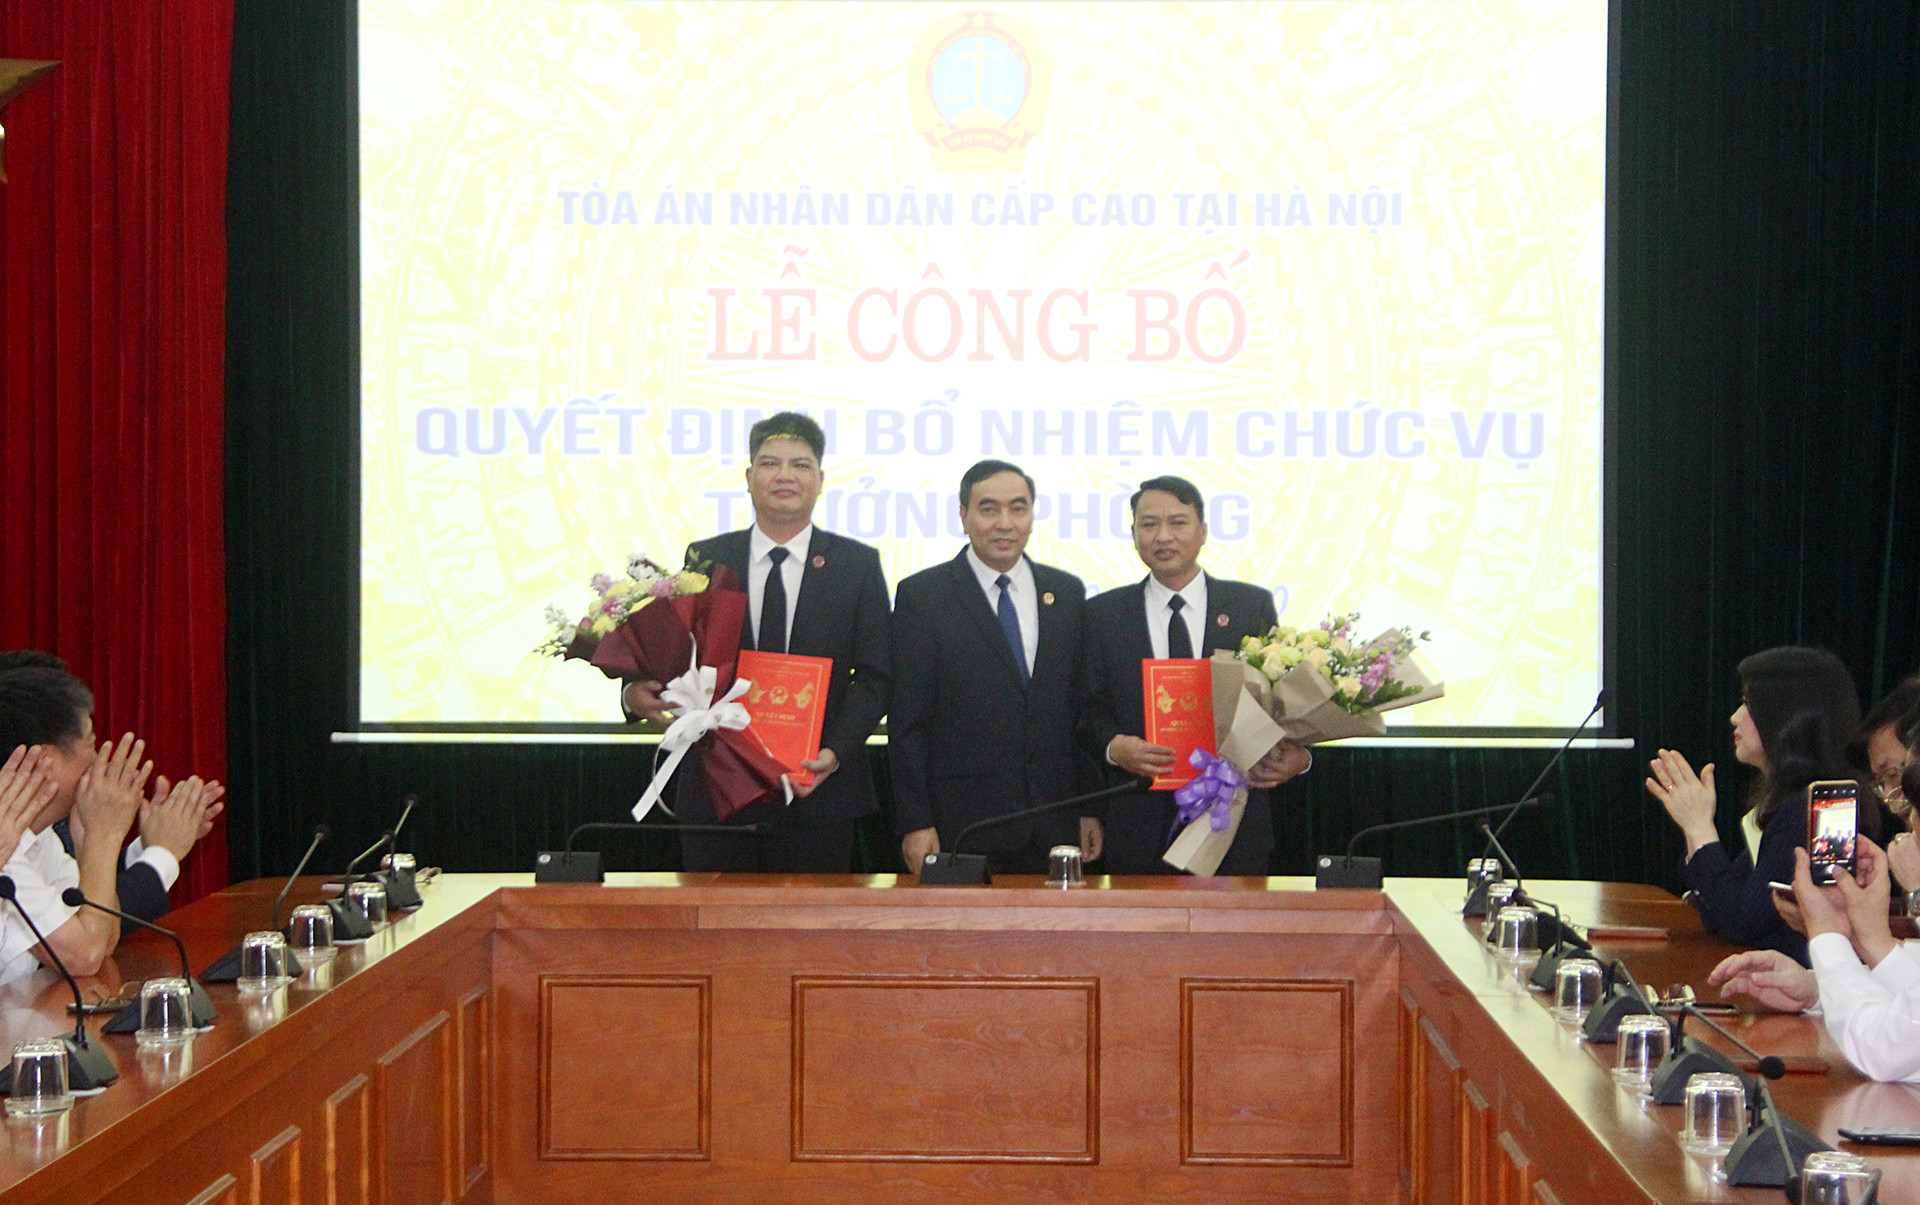 TAND cấp cao tại Hà Nội bổ nhiệm các chức vụ quản lý